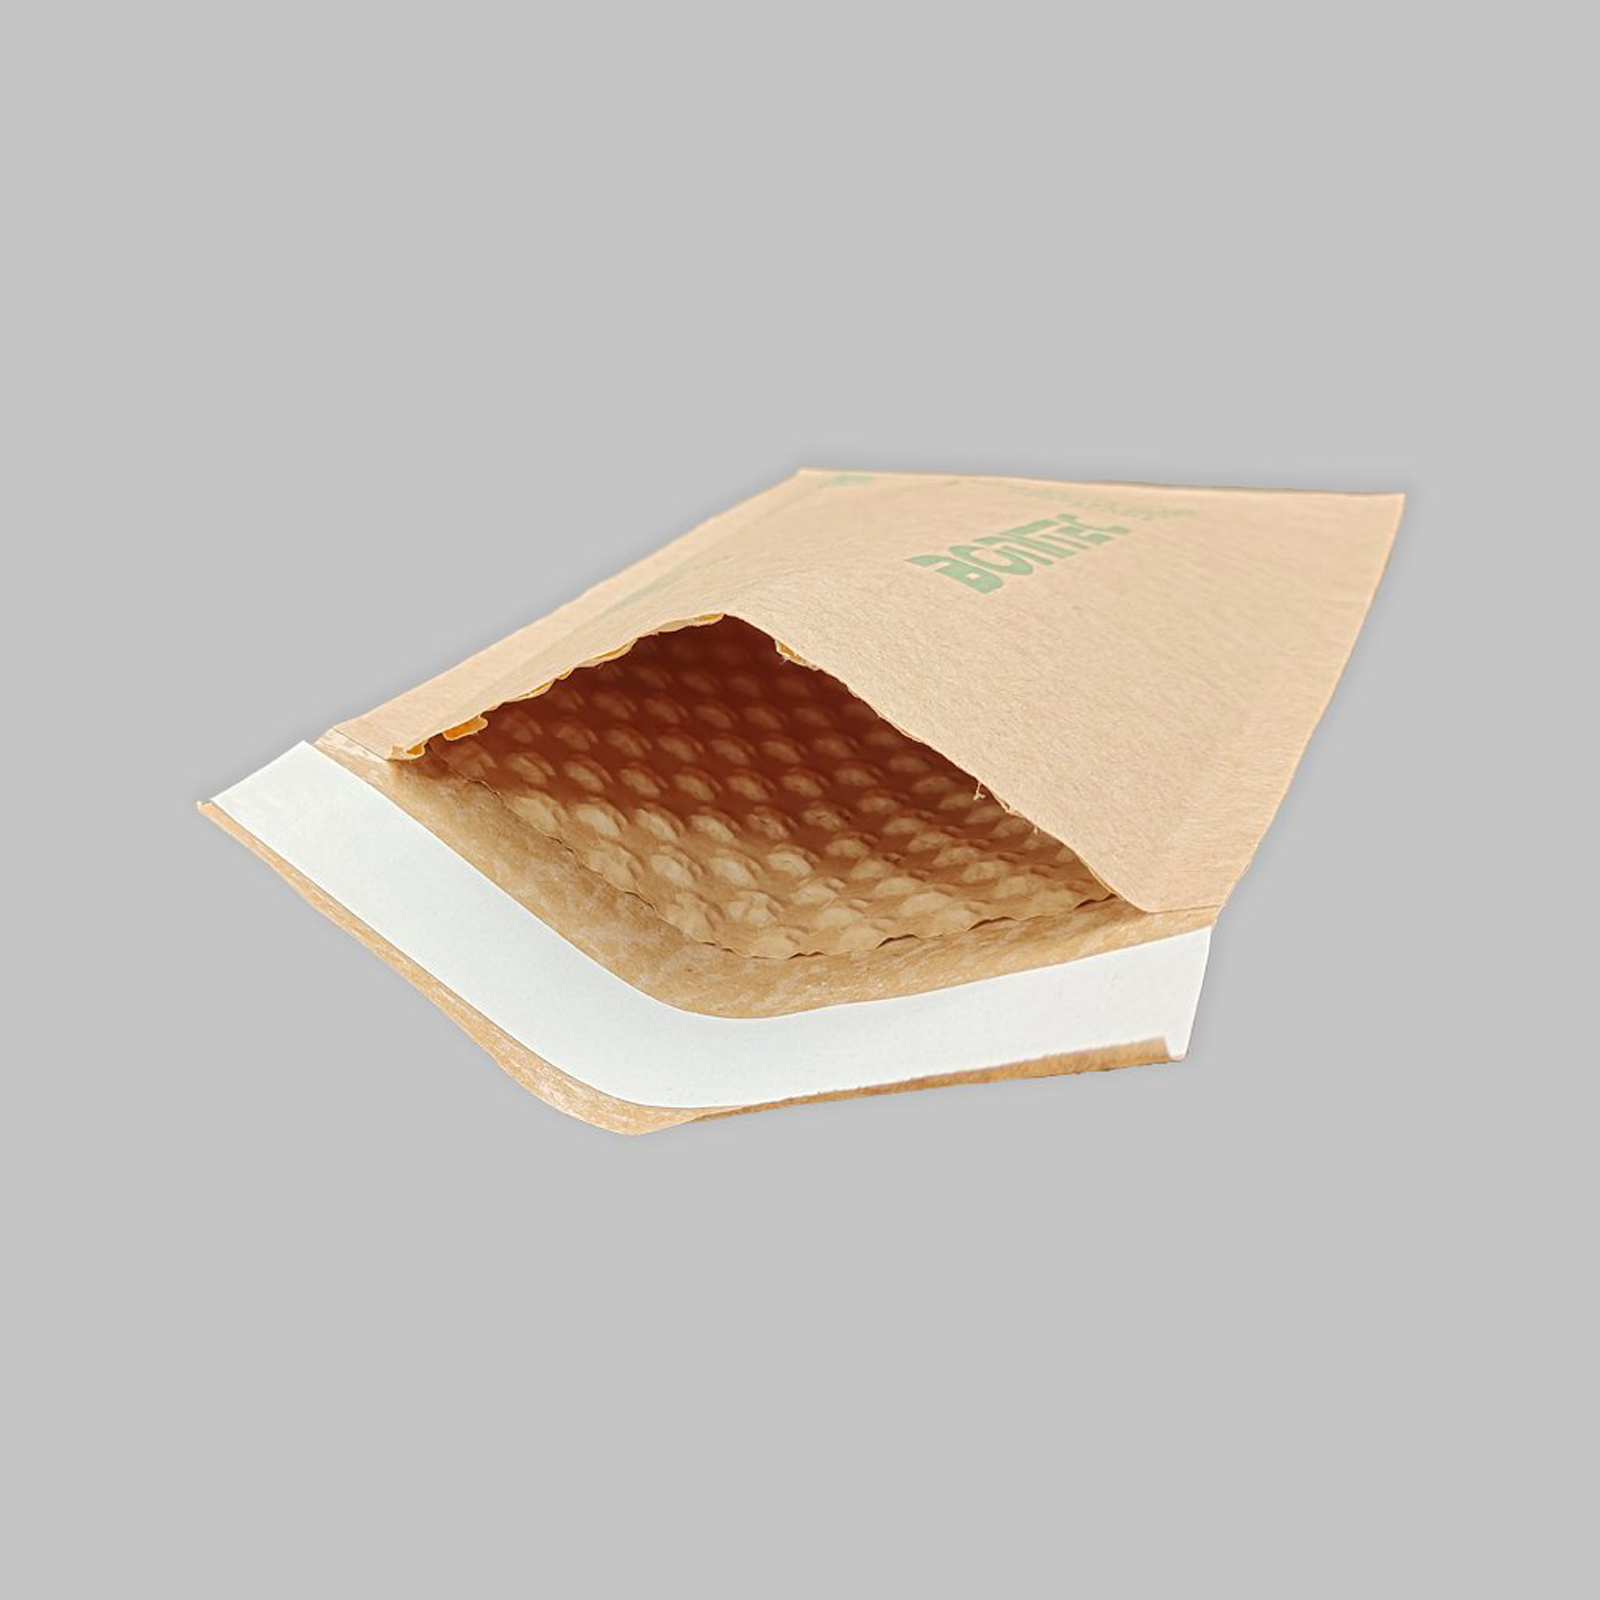 Anuncio publicitario KRAFBUBBLE marrón-pequeño de 2 capas 200 piezas (160 mm × 247 mm / 6.3 '' × 9.72 '')